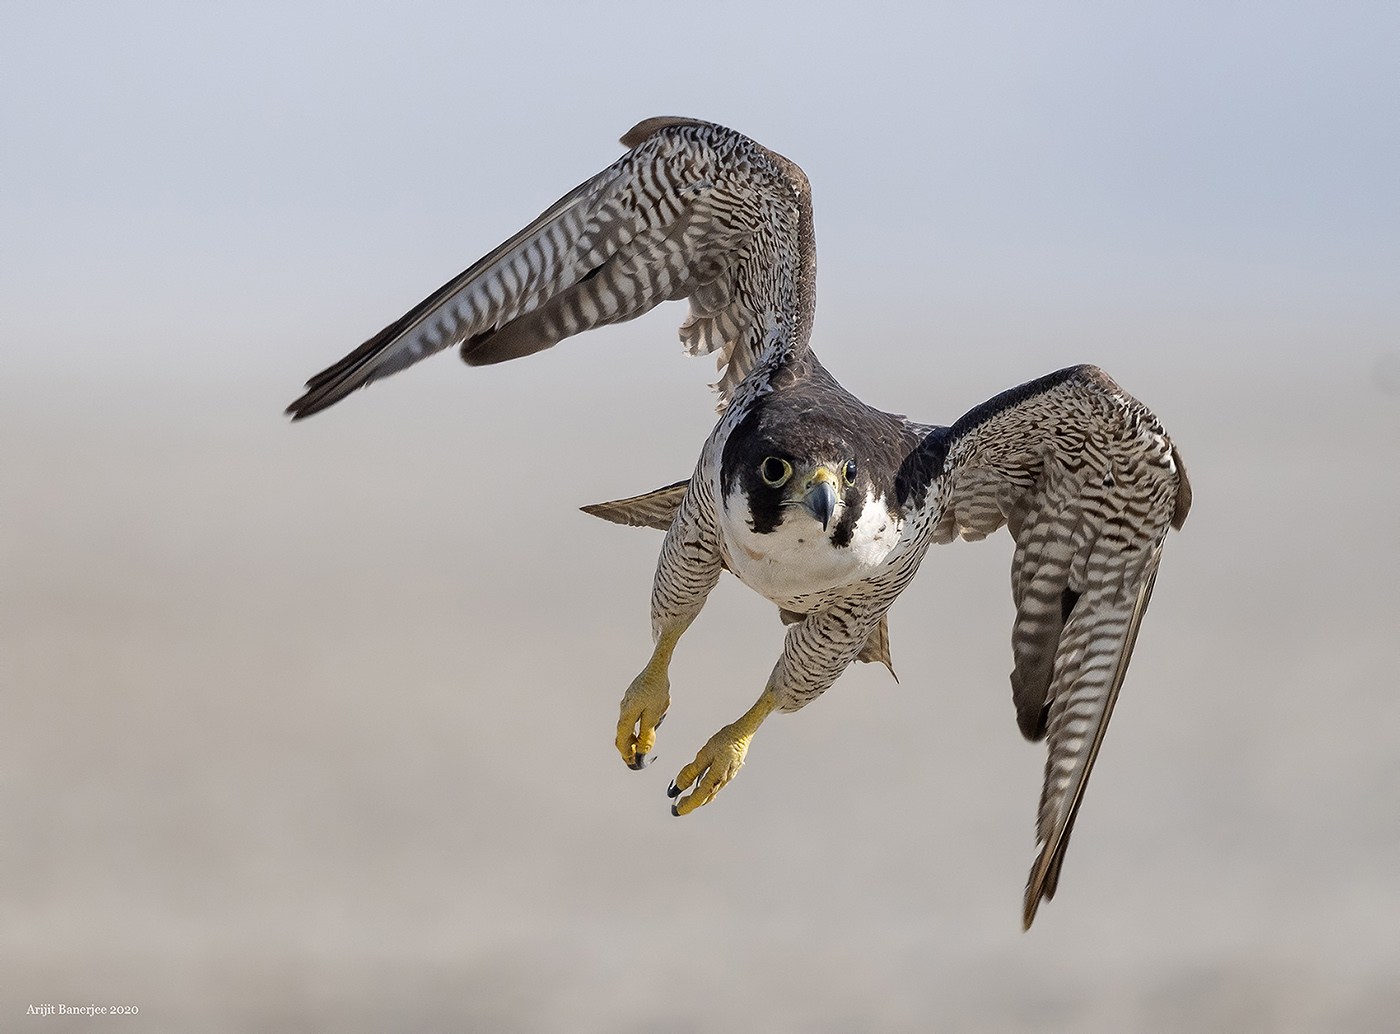 1 nov 20 sambhar peregrine falcon flight small.jpg